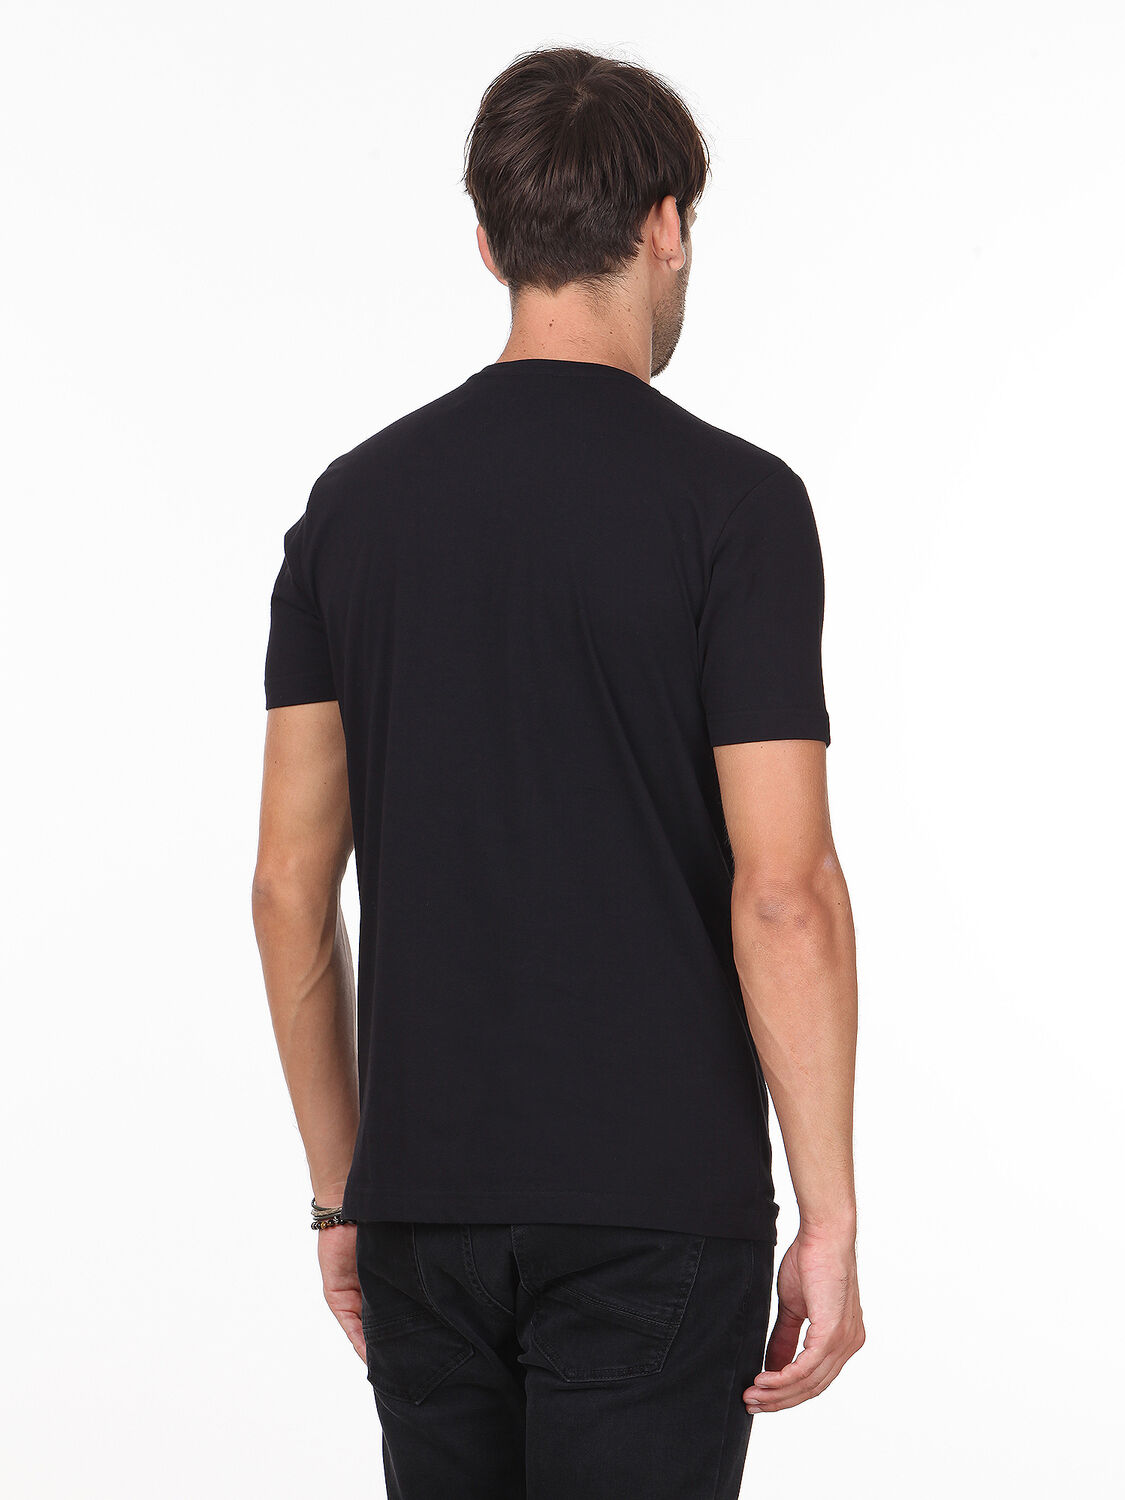 Siyah Baskılı %100 Pamuk T-Shirt